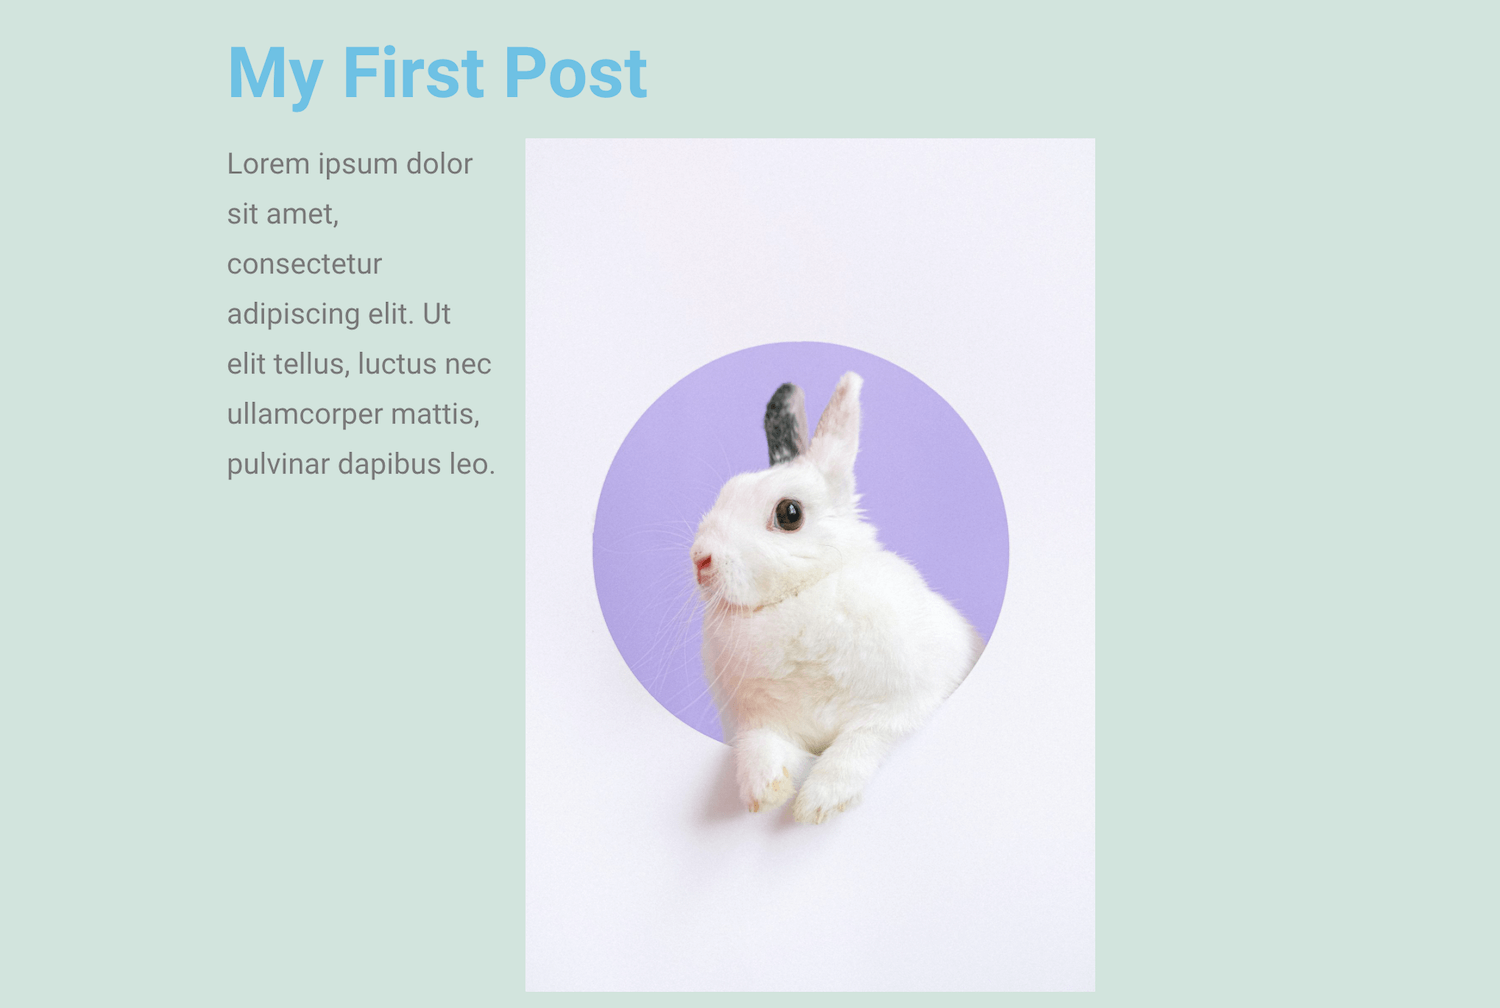 Anteprima della pagina Elementor con un testo Lorem Ipsum e l’immagine di un coniglietto bianco in un riquadro lilla